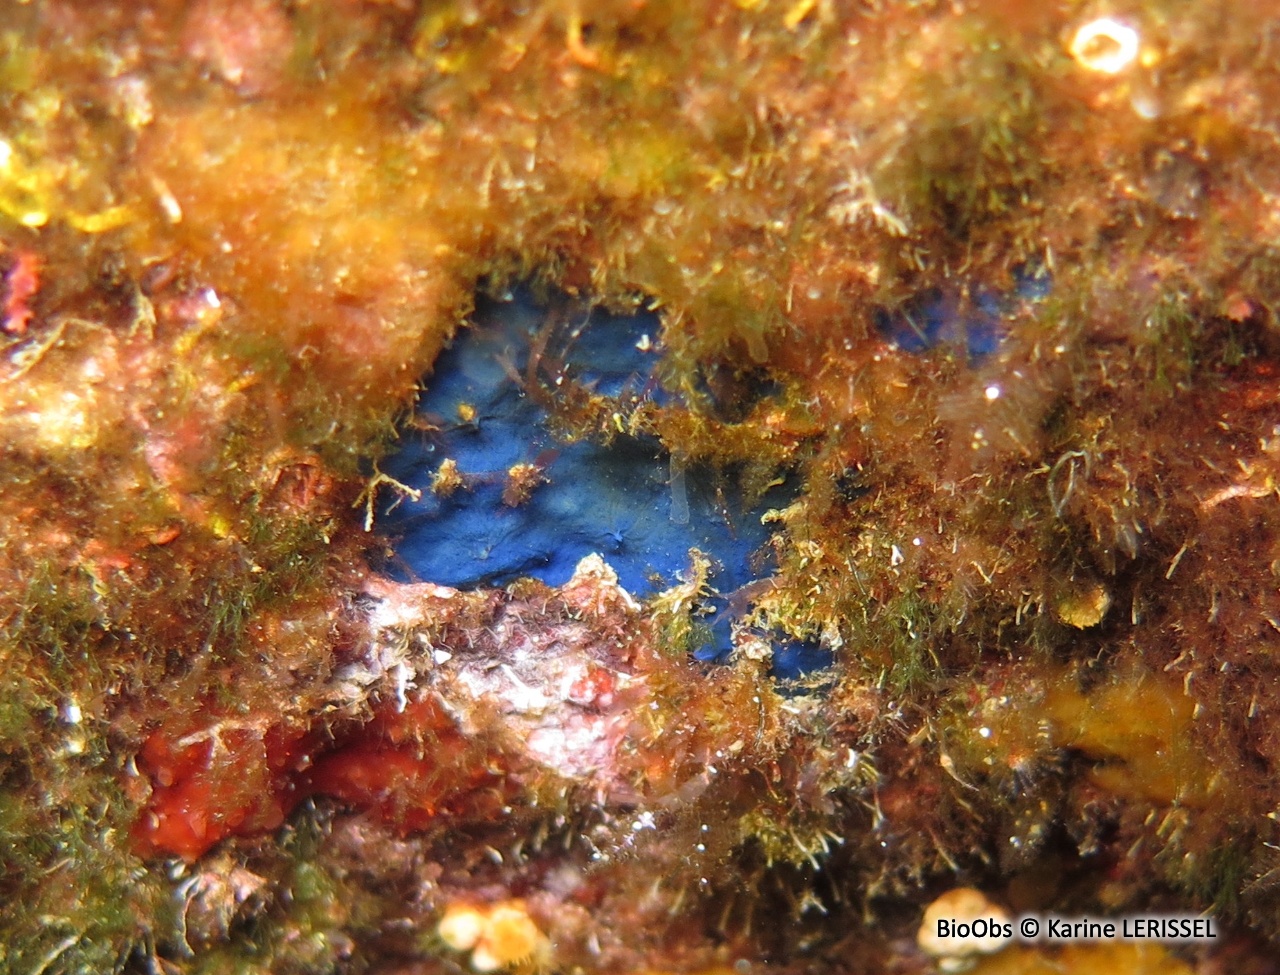 Eponge encroûtante bleue - Terpios gelatinosus - Karine LERISSEL - BioObs